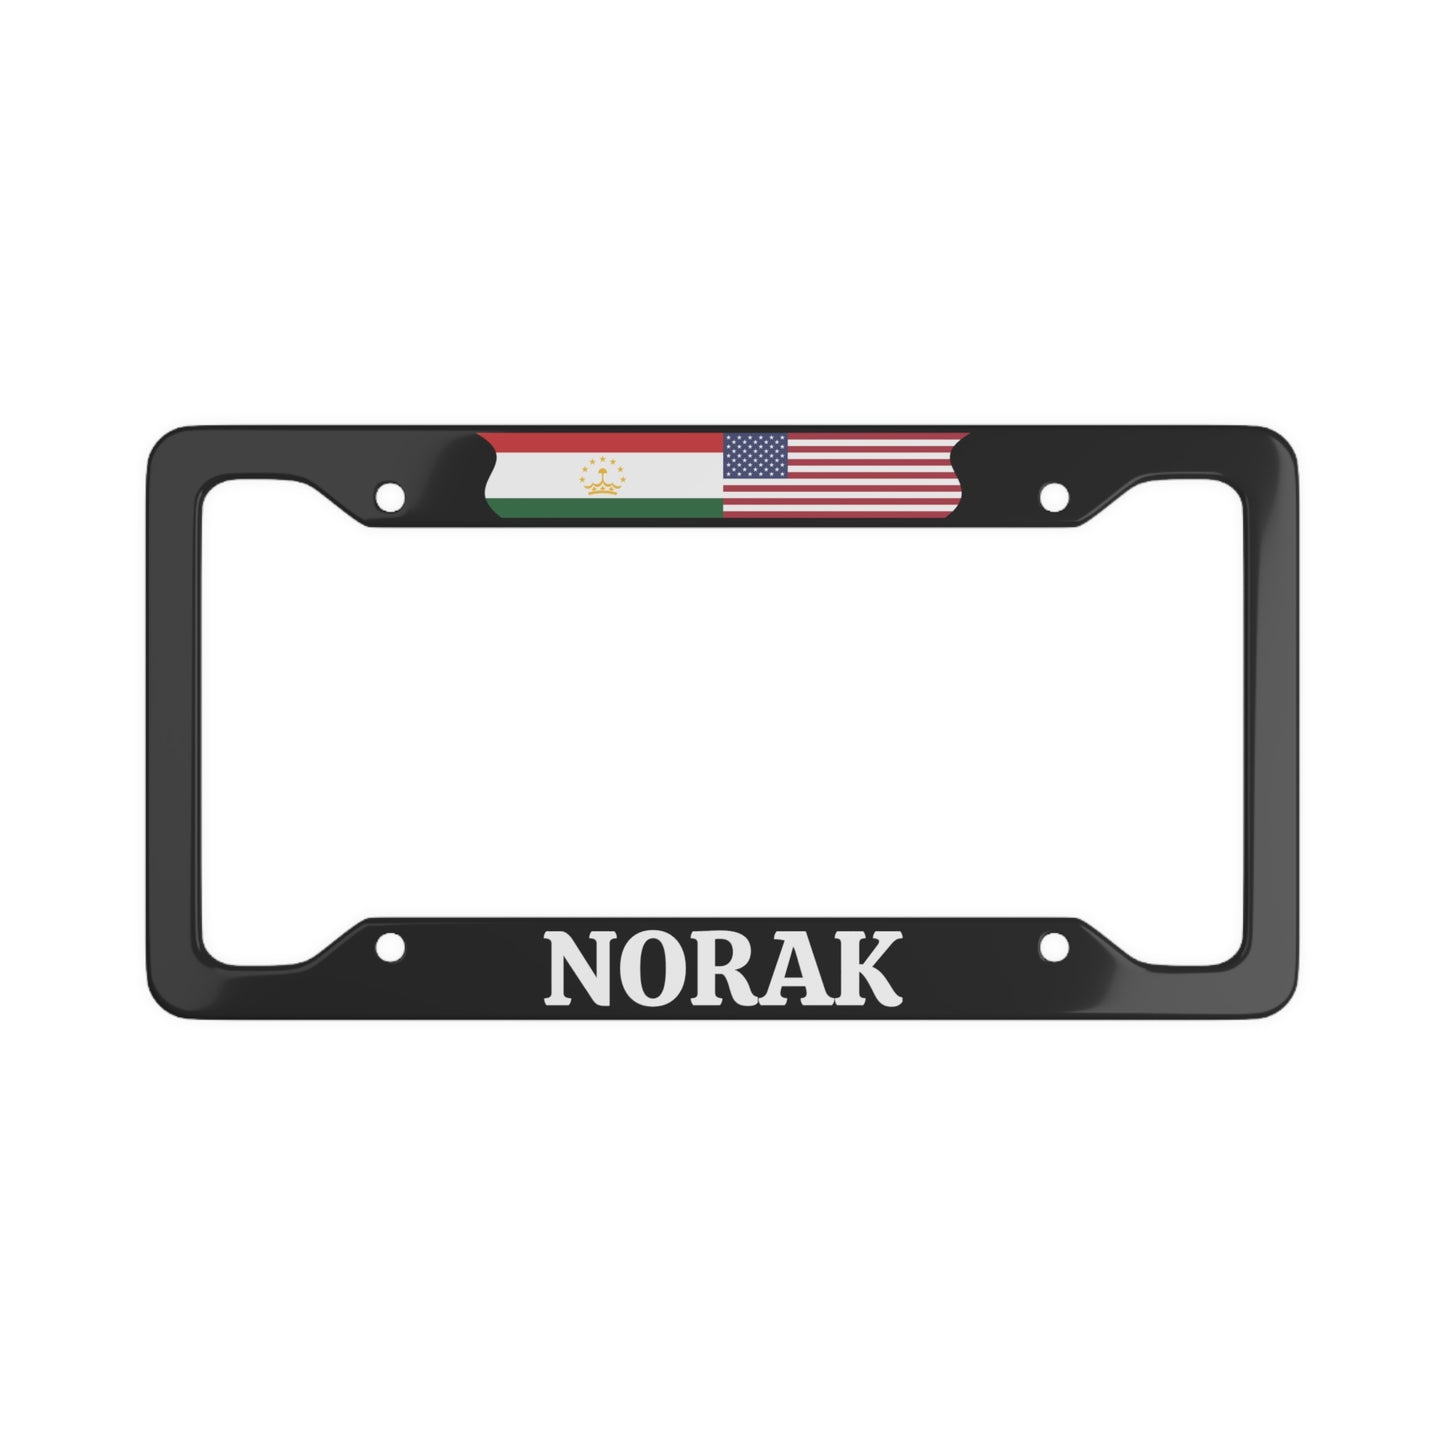 Norak TJK License Plate Frame